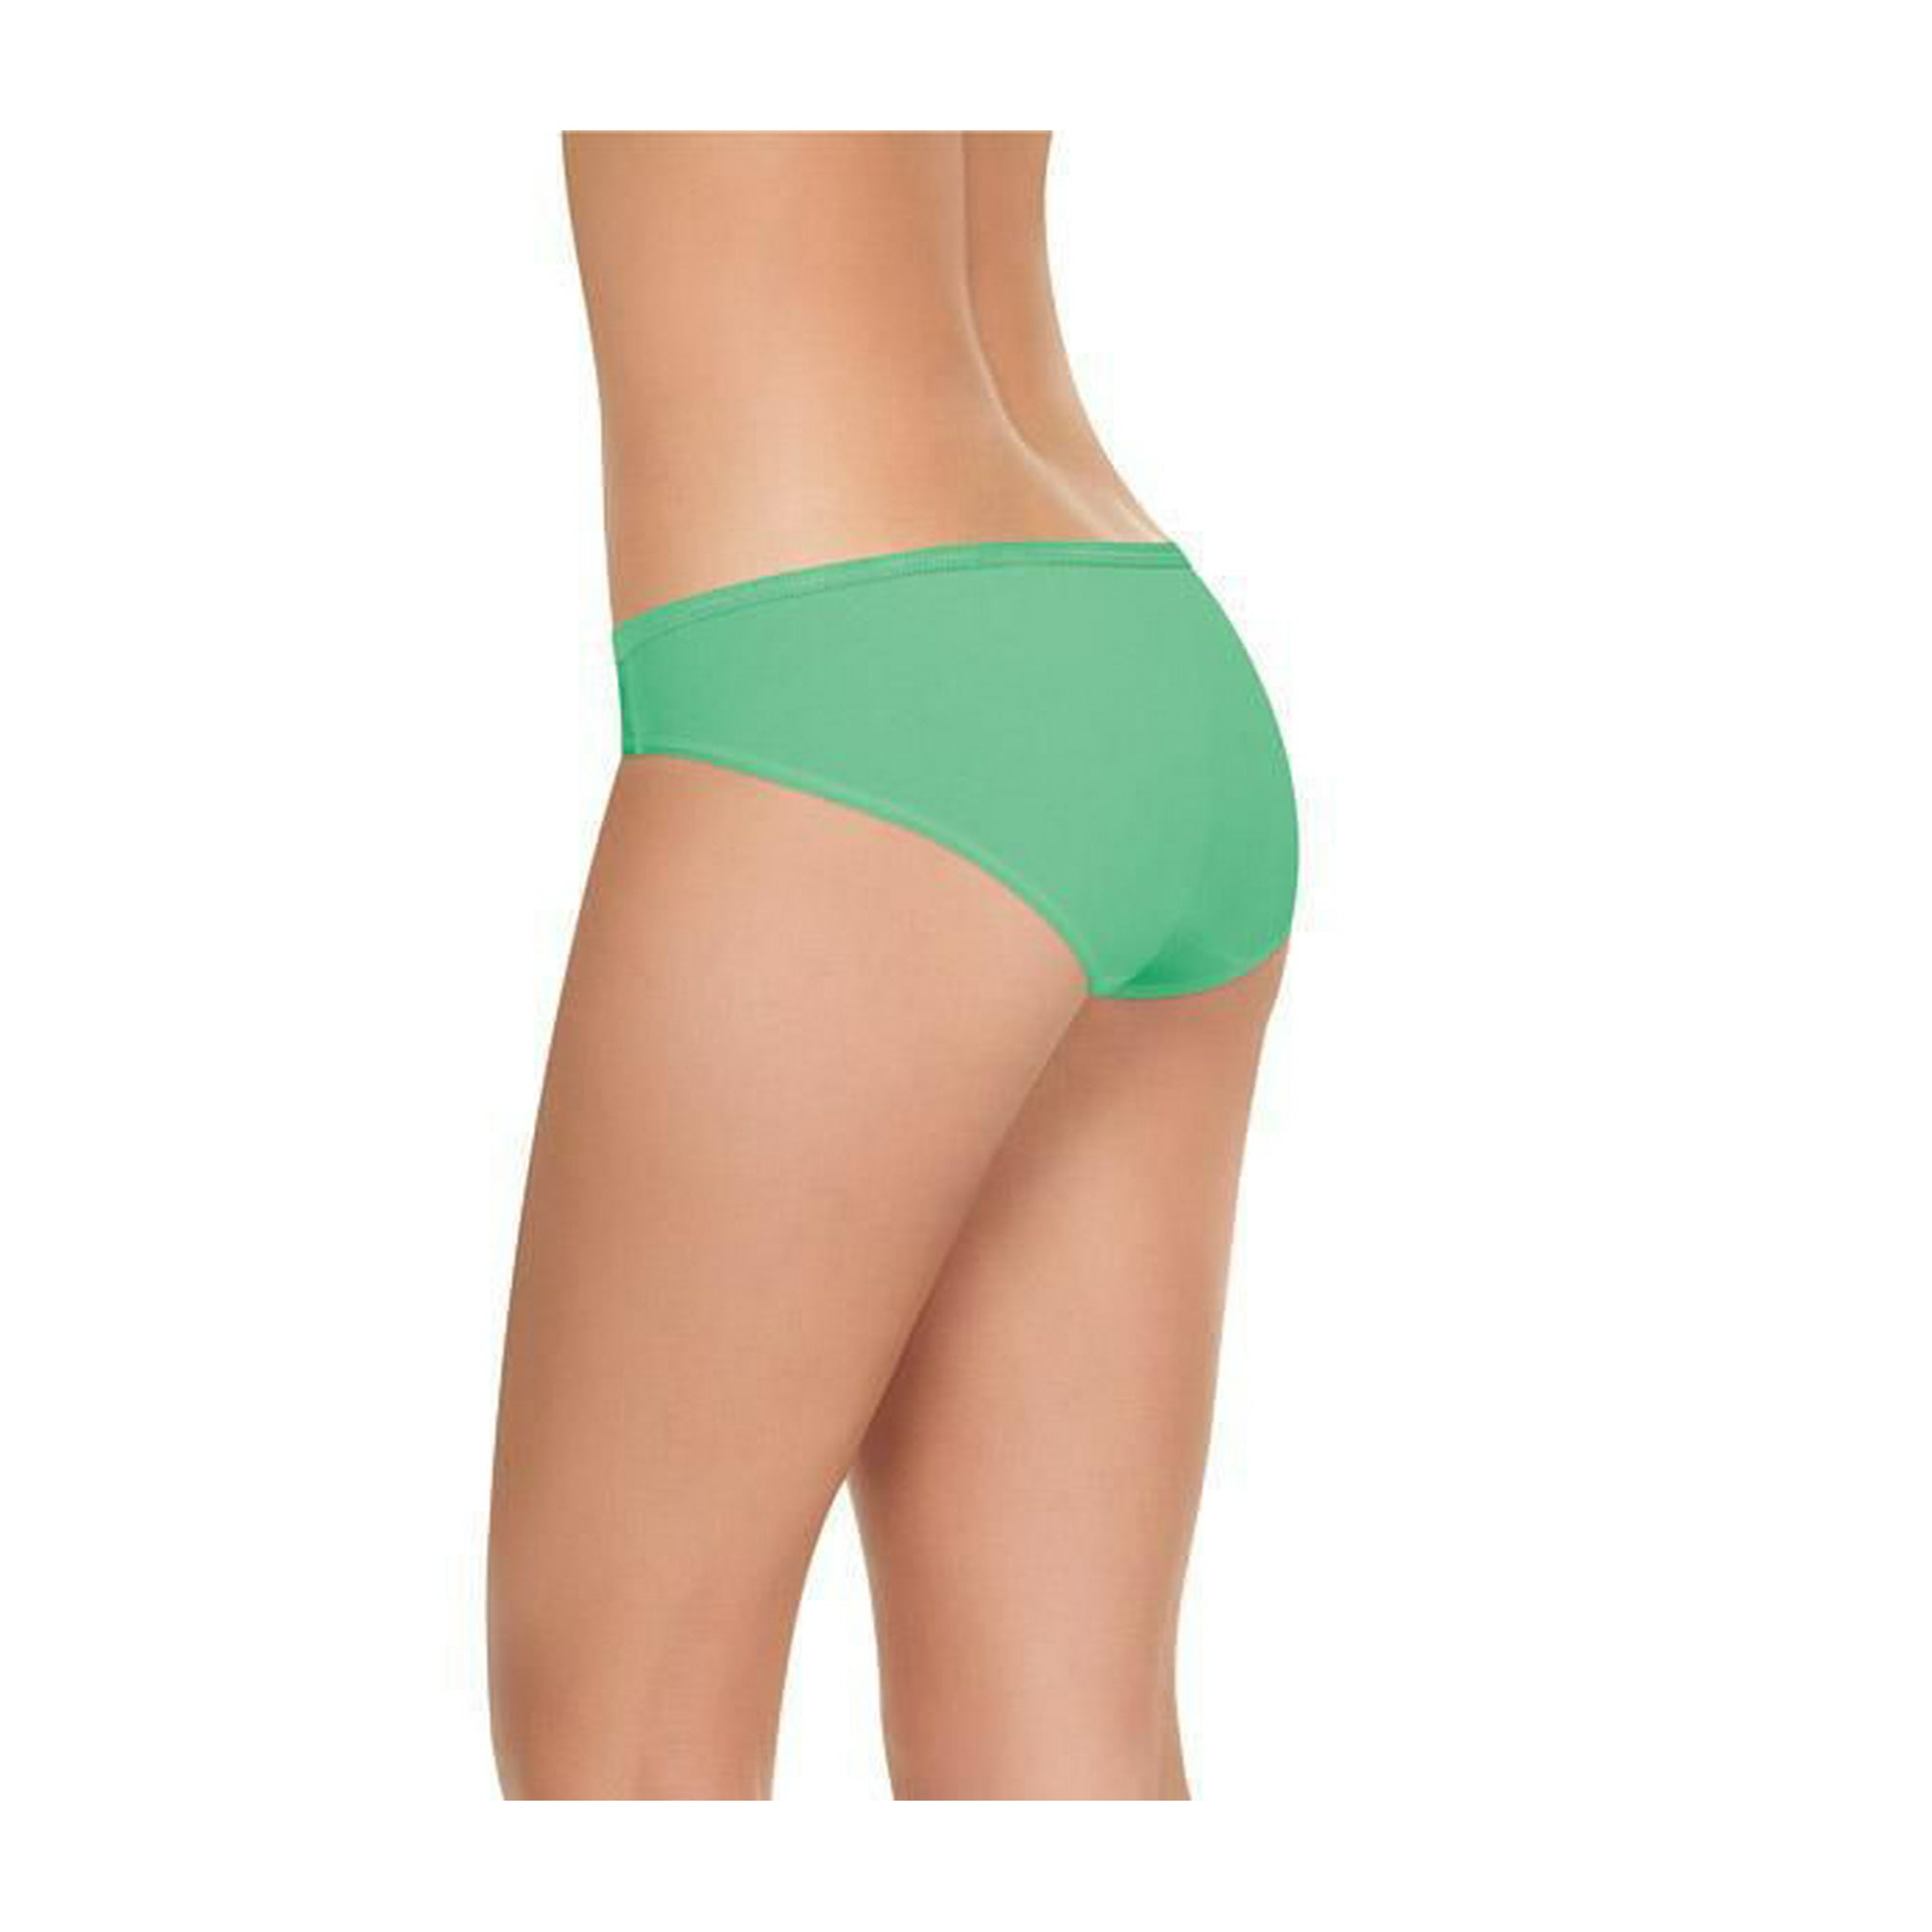 Hanes® Ultimate Breathable Cotton Tagless® Bikini Underwear, 6